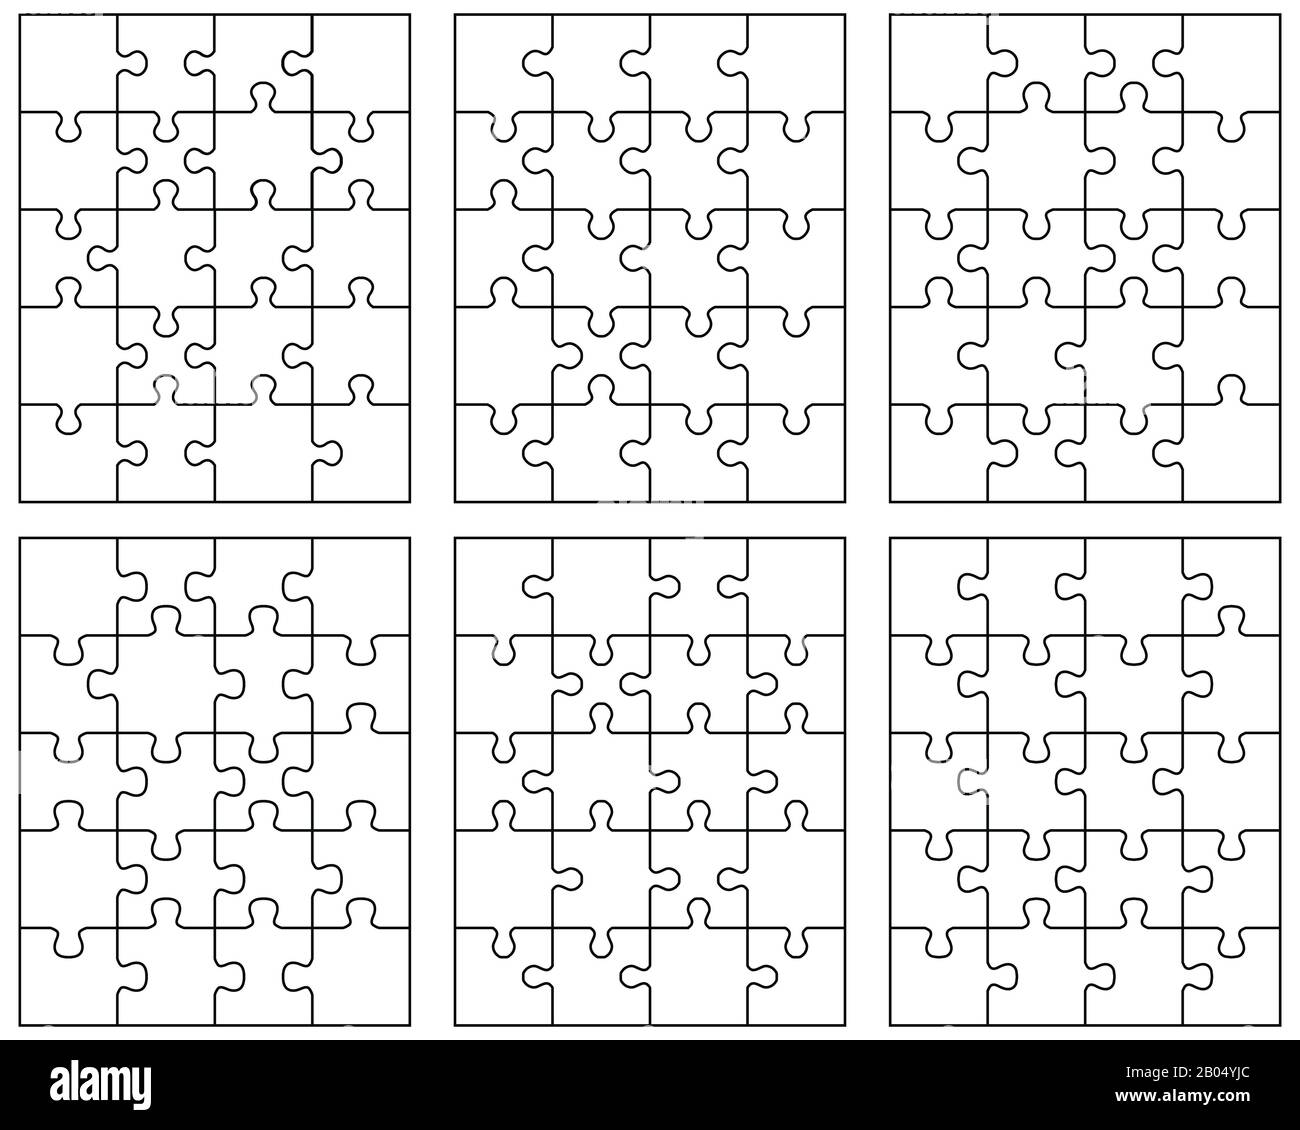 Illustrazione di sei diversi puzzle bianchi, pezzi separati Illustrazione di sei diversi puzzle bianchi, pezzi separati Foto Stock